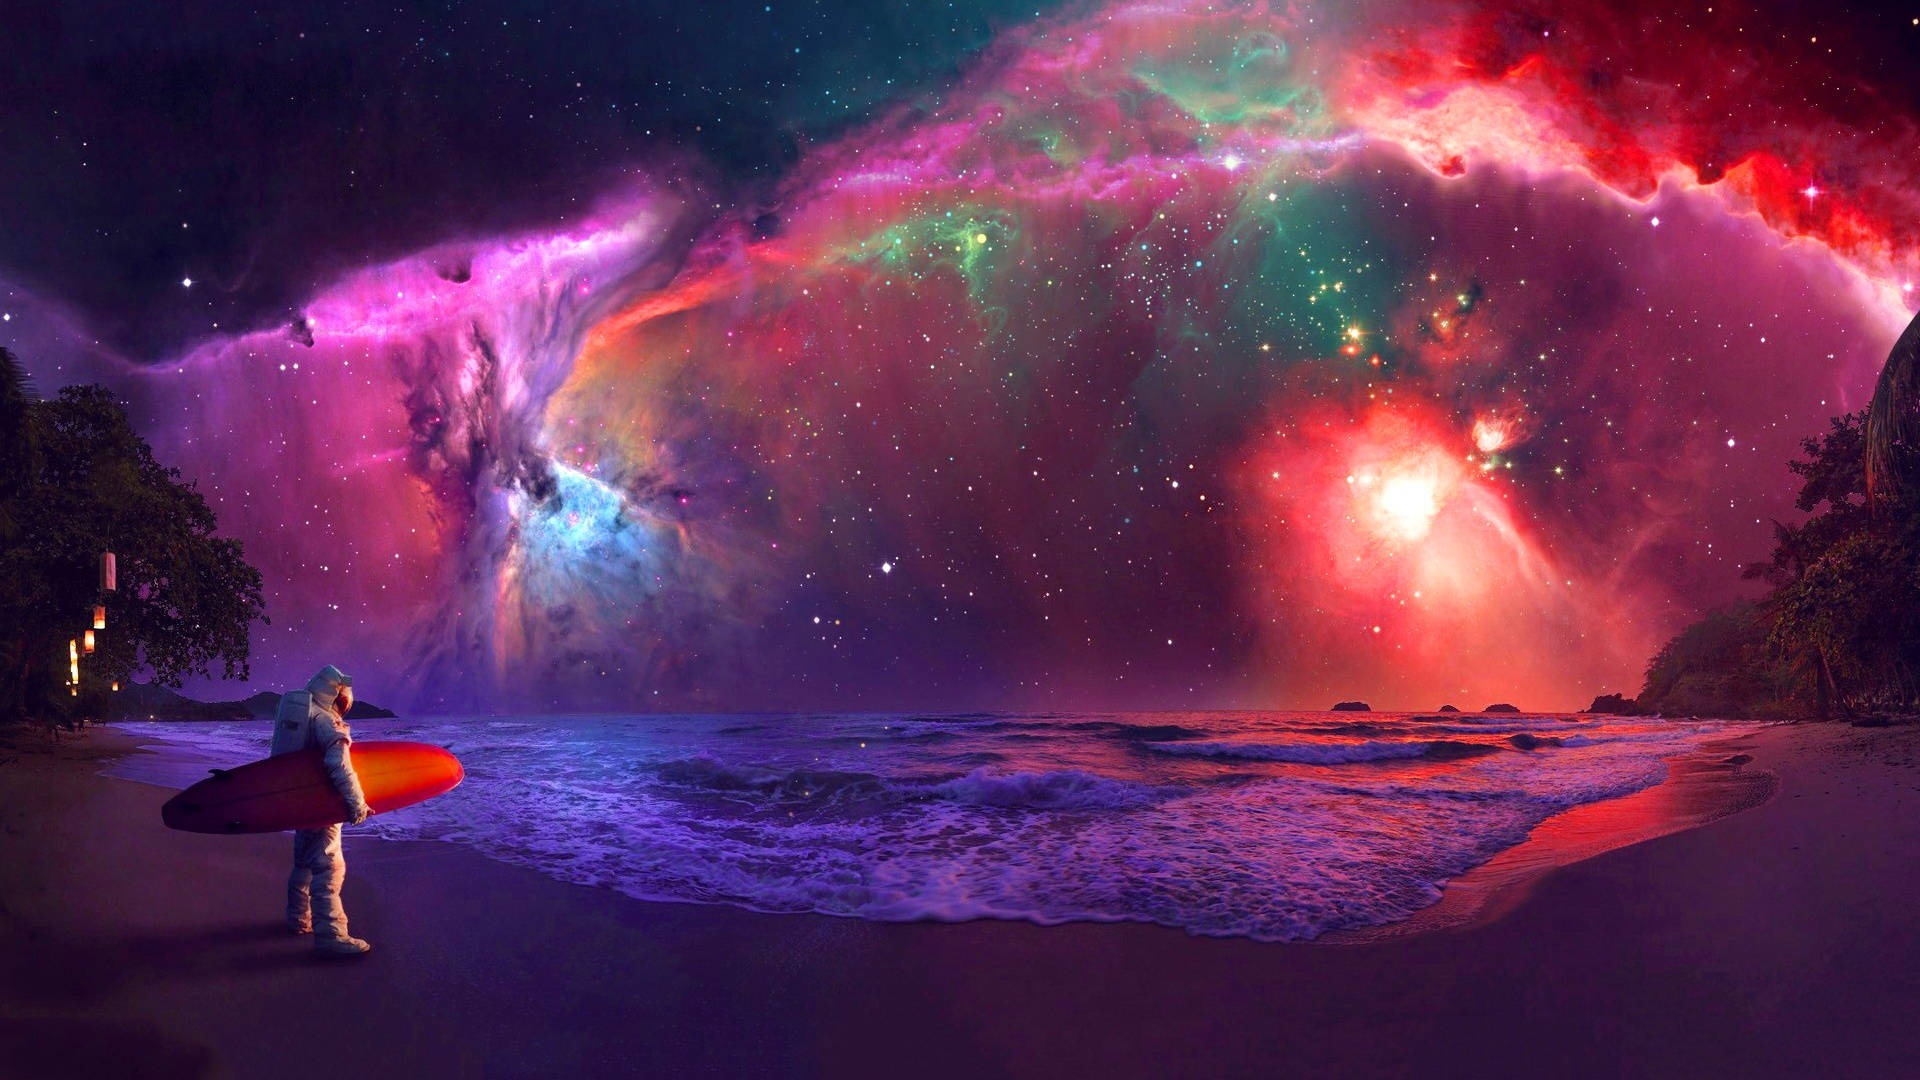 Increíblefondo De Pantalla De Playa Espacial Con Astronauta. Fondo de pantalla